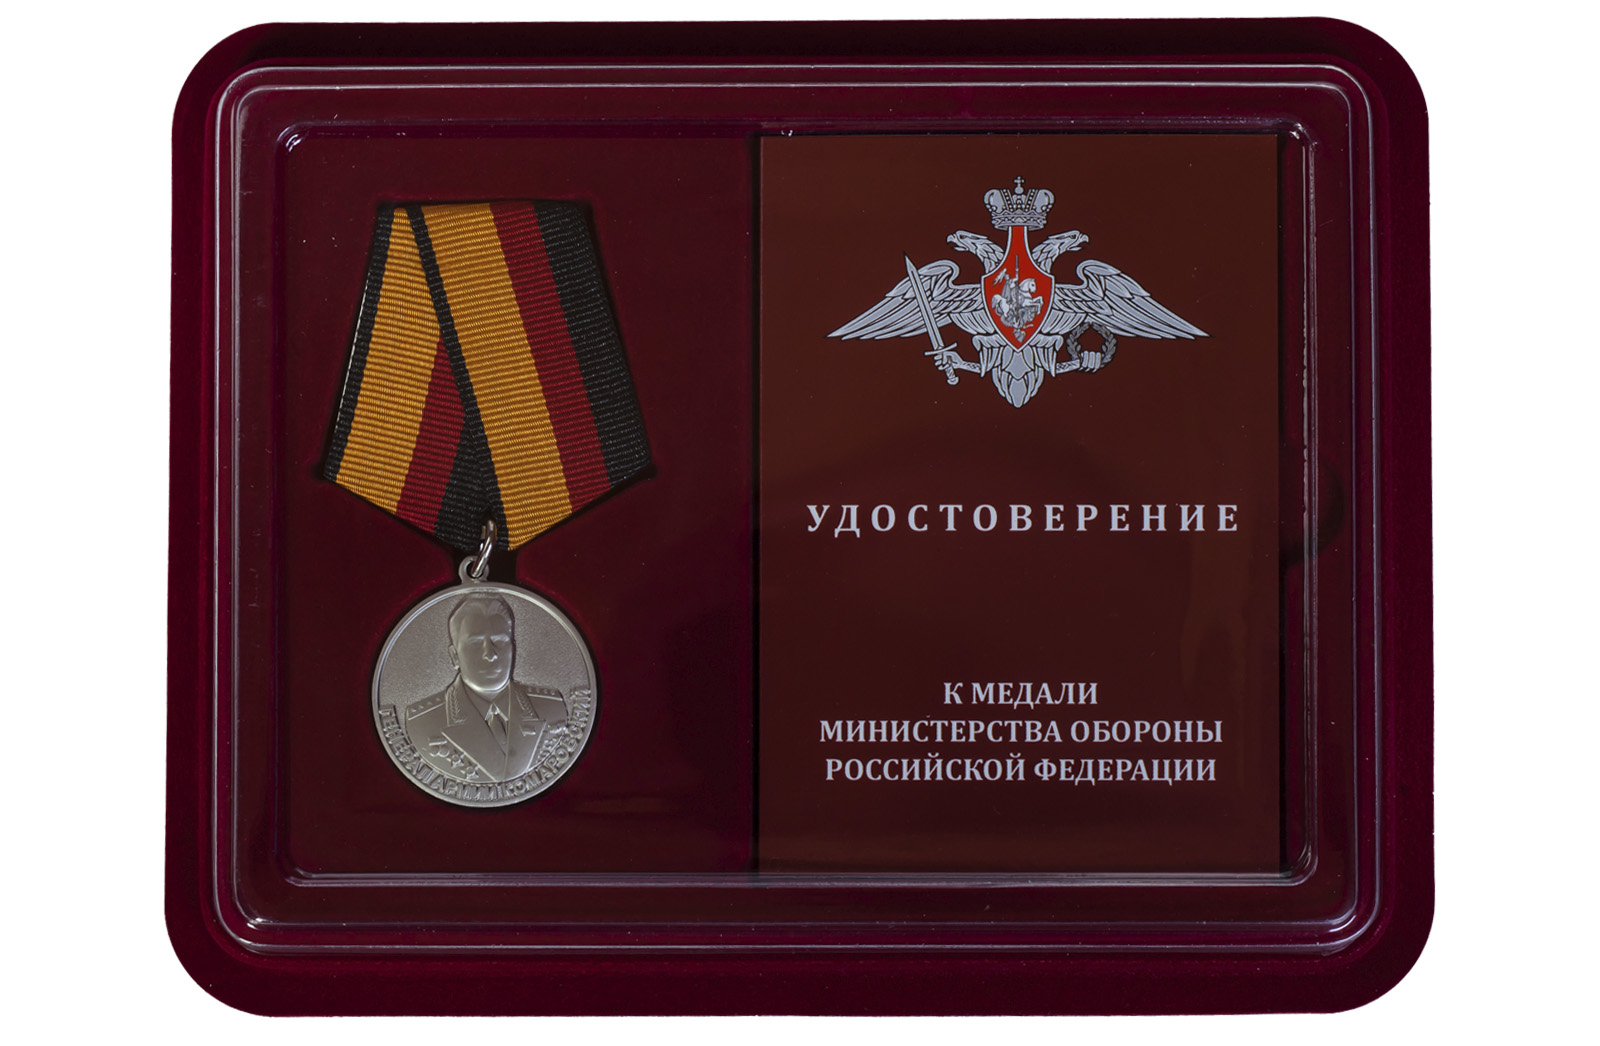 Купить ведомственную медаль Генерал армии Комаровский оптом или в розницу